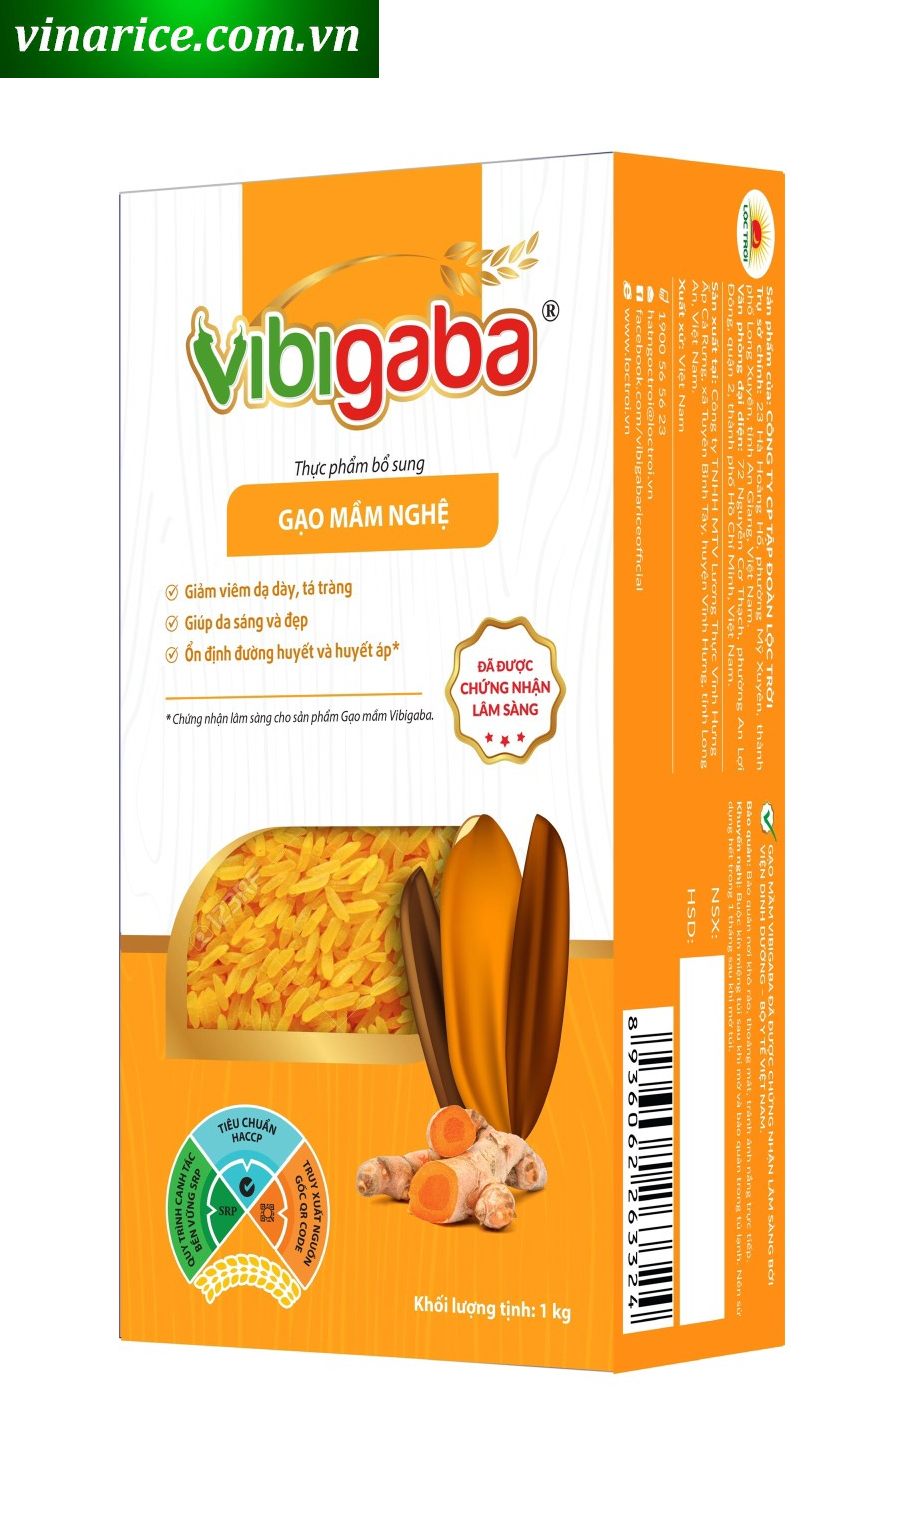 [HCM]Combo Gạo Mầm Vibigaba Nghệ (3 hộp x 1kg) (chính hãng)